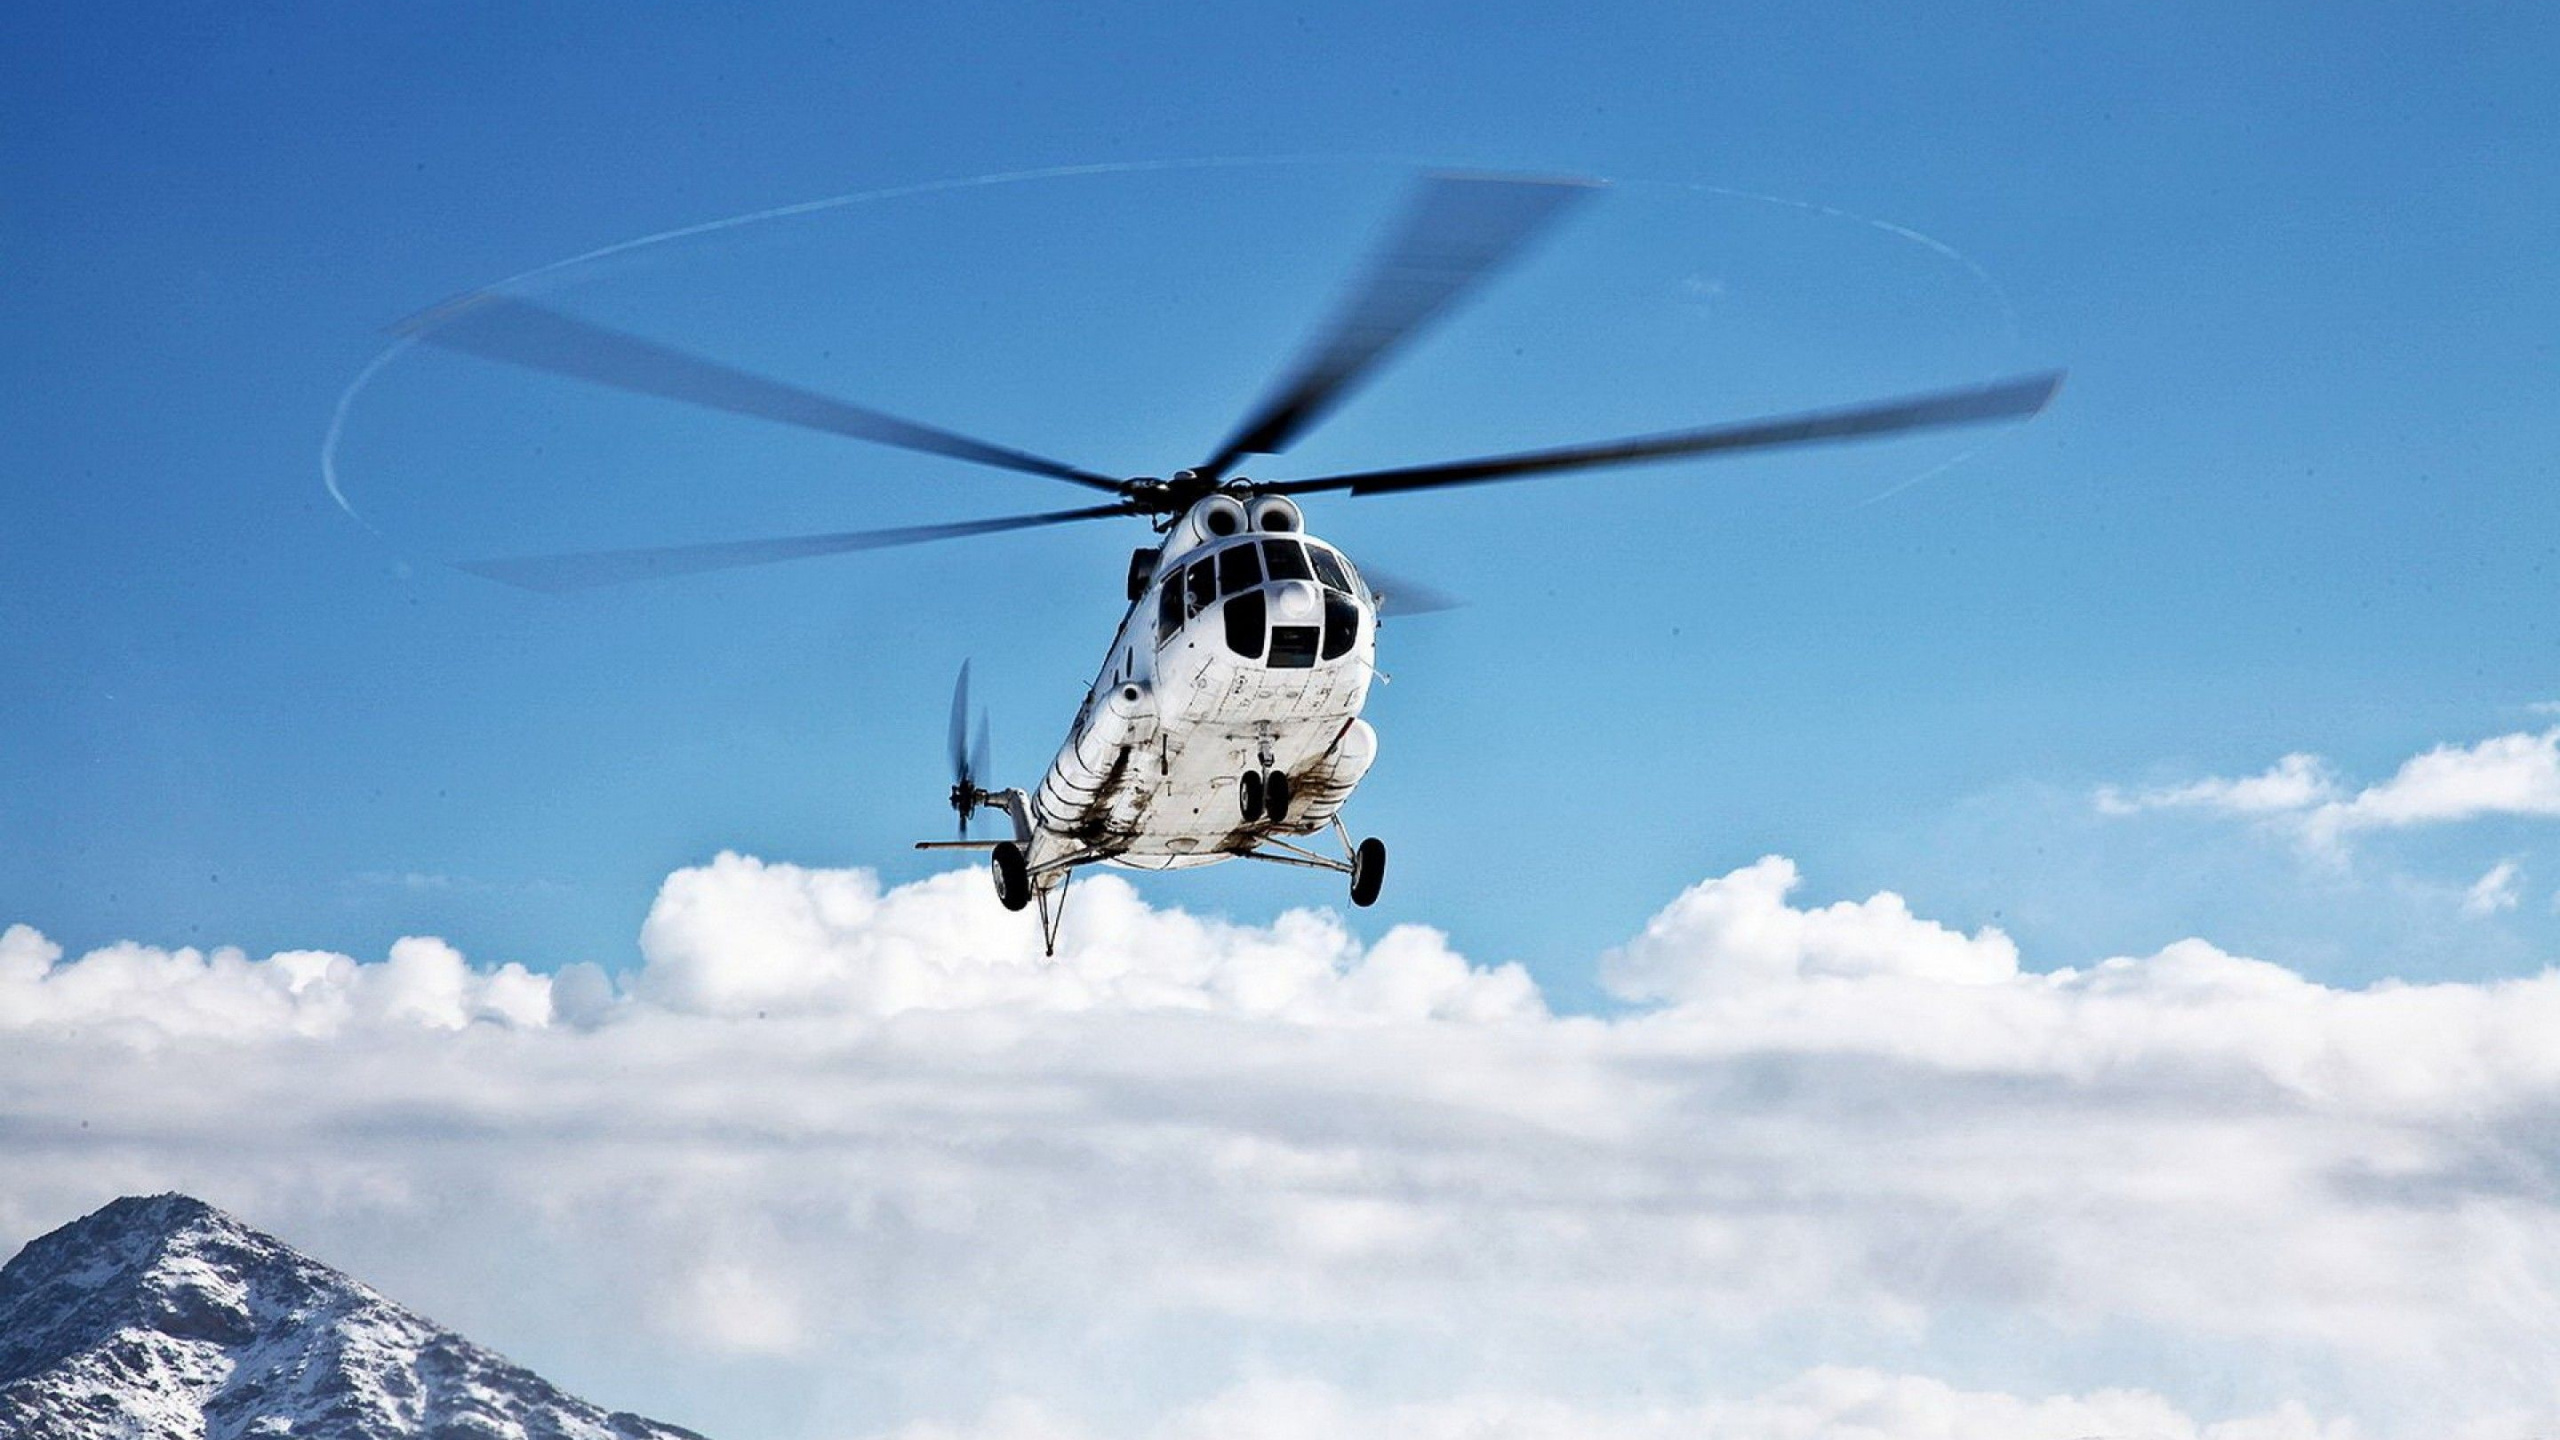 直升机, 军用直升机, 直升机转子的, 旋翼飞机, 航空 壁纸 2560x1440 允许